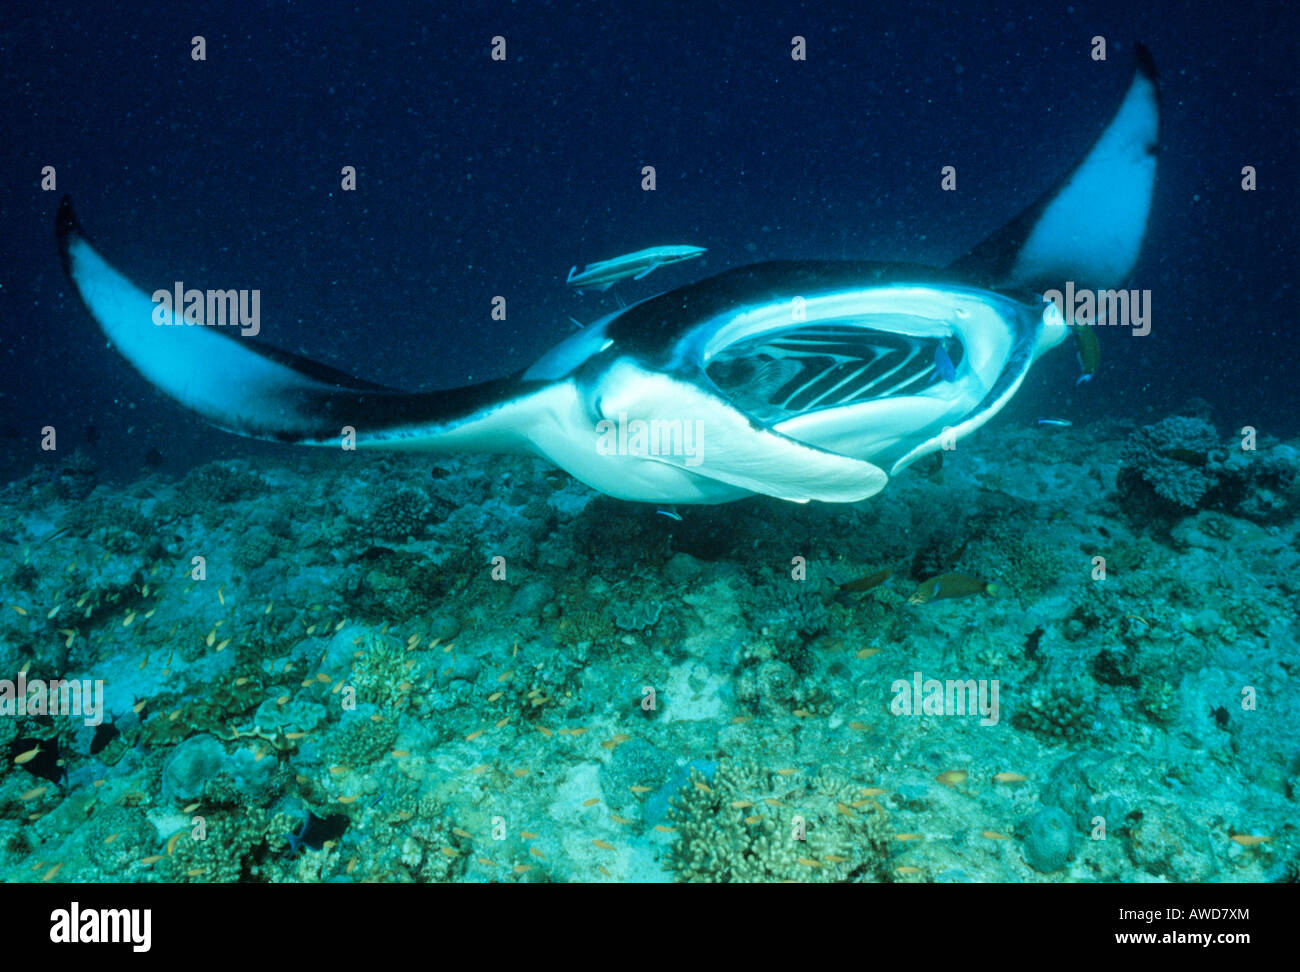 Raie Manta géante (Manta birostris) et de corail sous-marine, photographie, de l'Océan Indien Banque D'Images